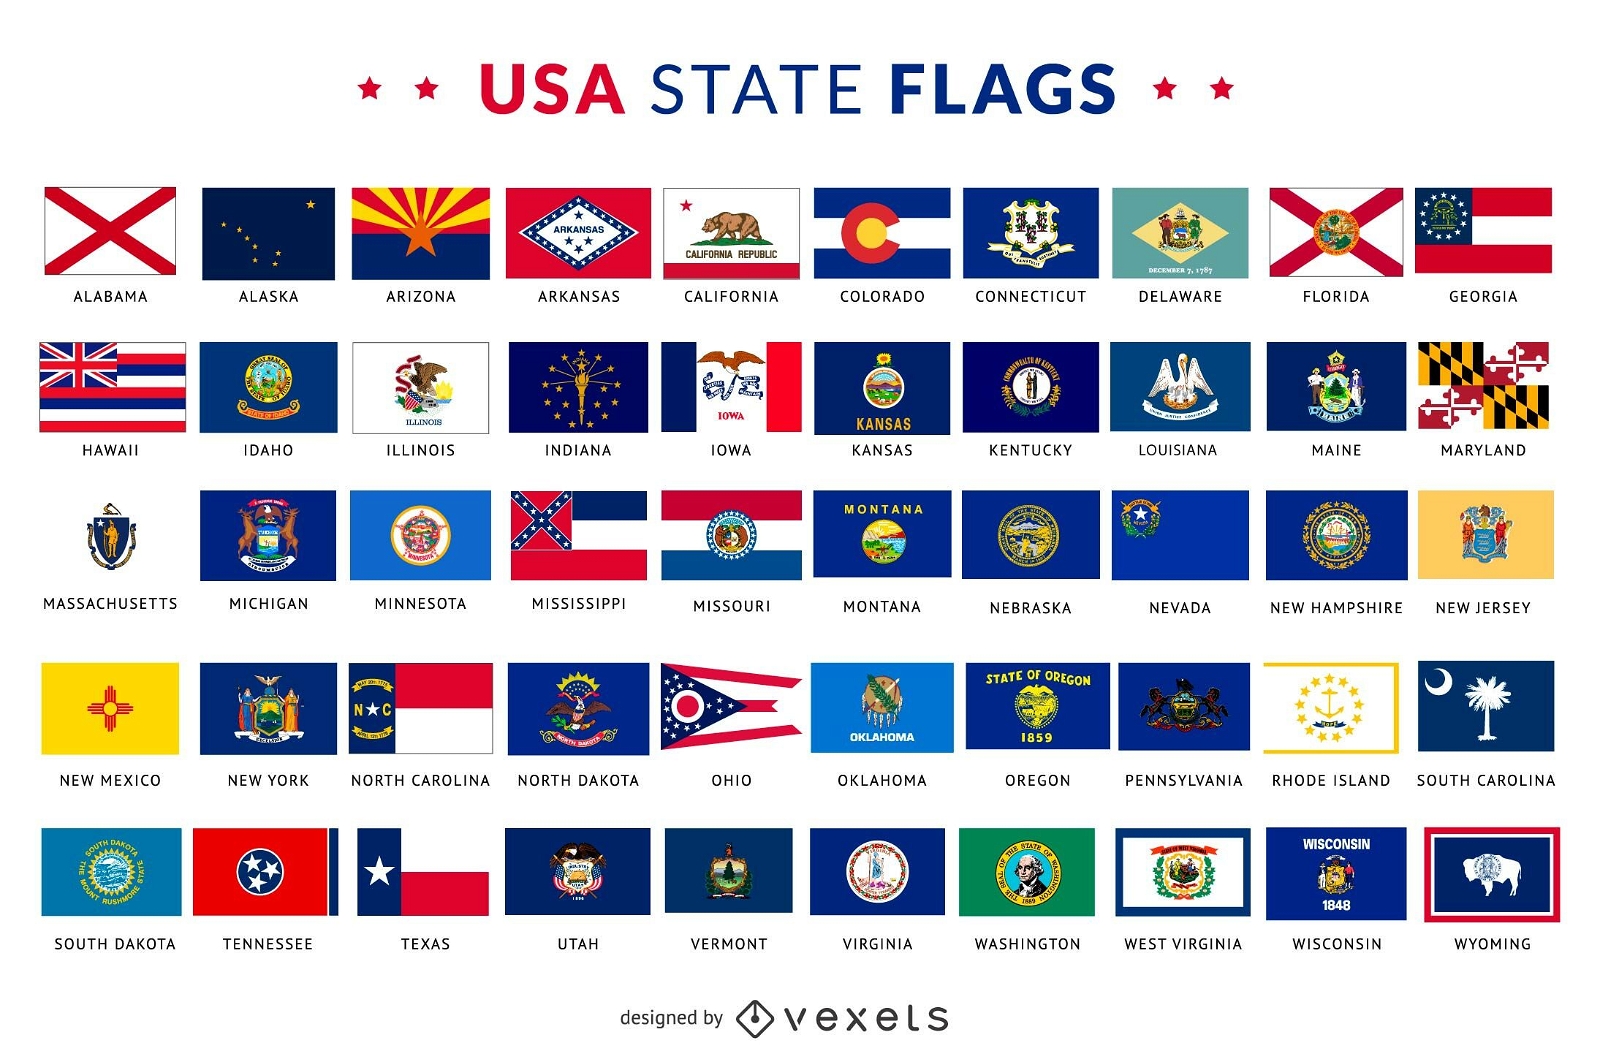 Colecci?n de banderas de estado de EE. UU.